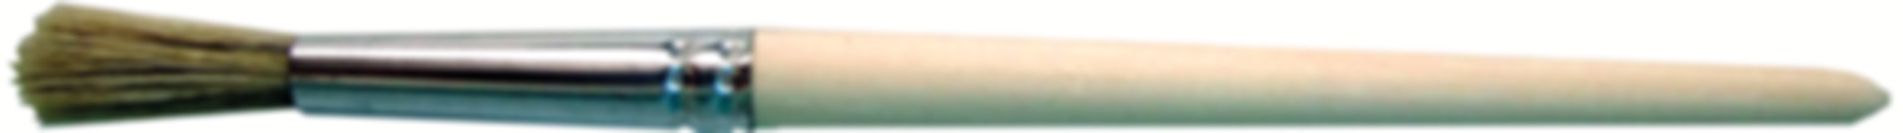 Rundpinsel 8 mm 799 299 002 - GF Hart PVC-U Formstücke